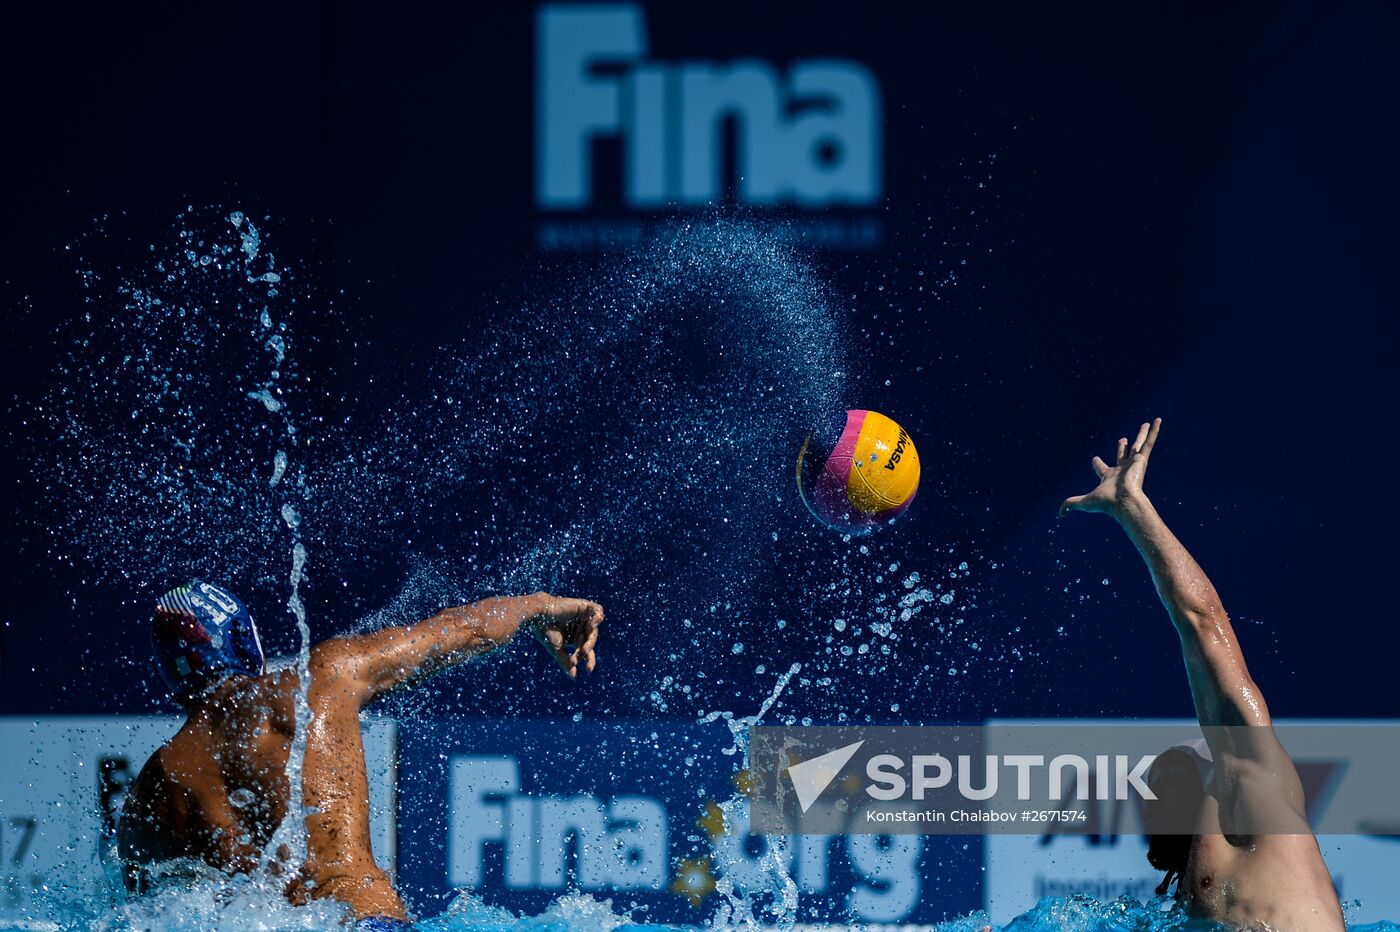 2015 FINA World Championships. Water polo. Men. Canada vs. Italy